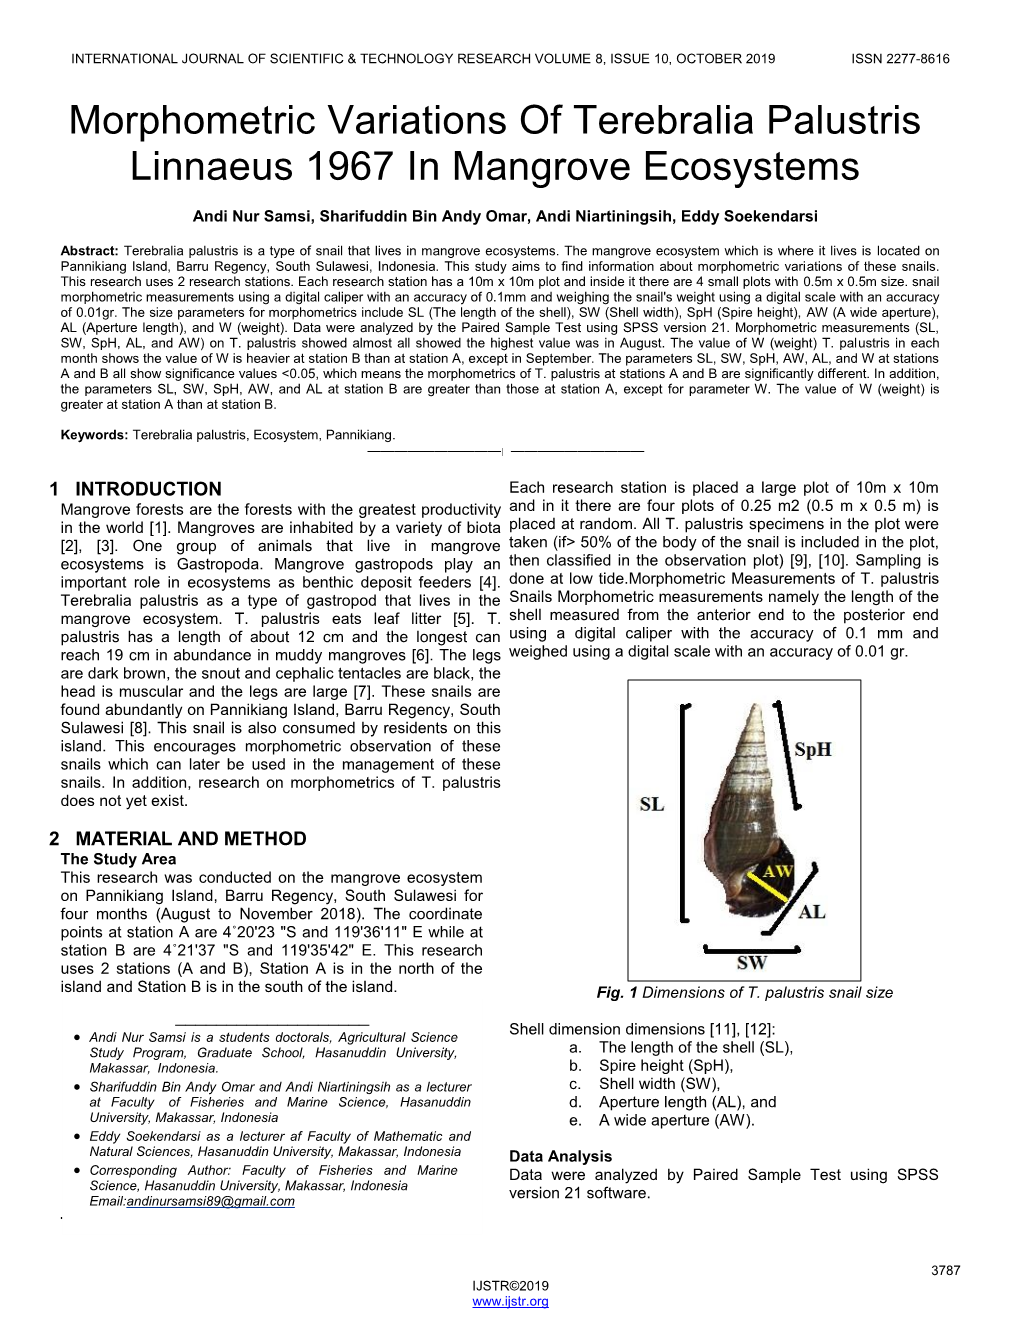 Morphometric Variations of Terebralia Palustris Linnaeus 1967 in Mangrove Ecosystems